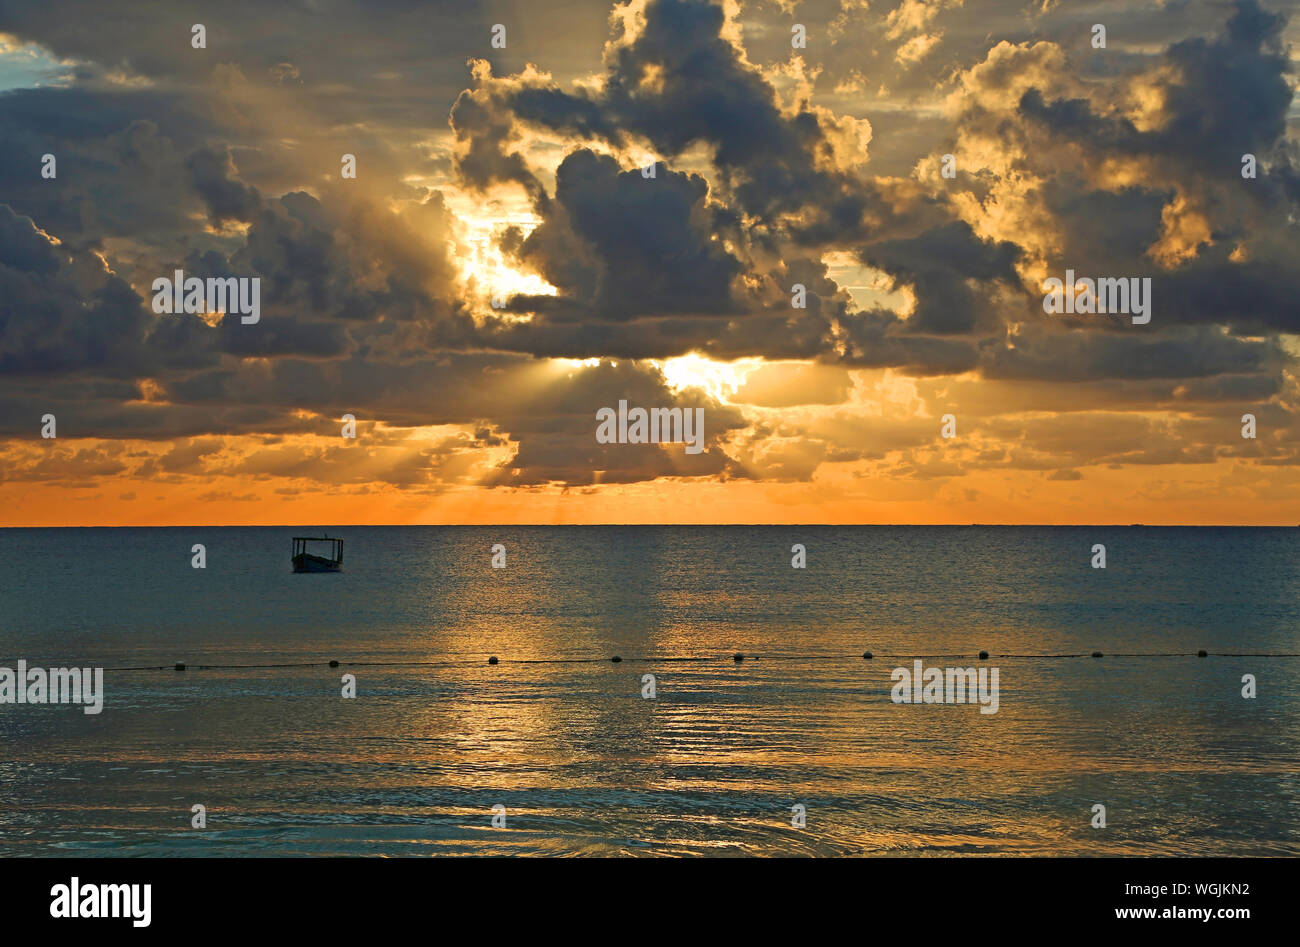 Paysage au coucher du soleil sur la mer des Caraïbes - Jamaïque Banque D'Images